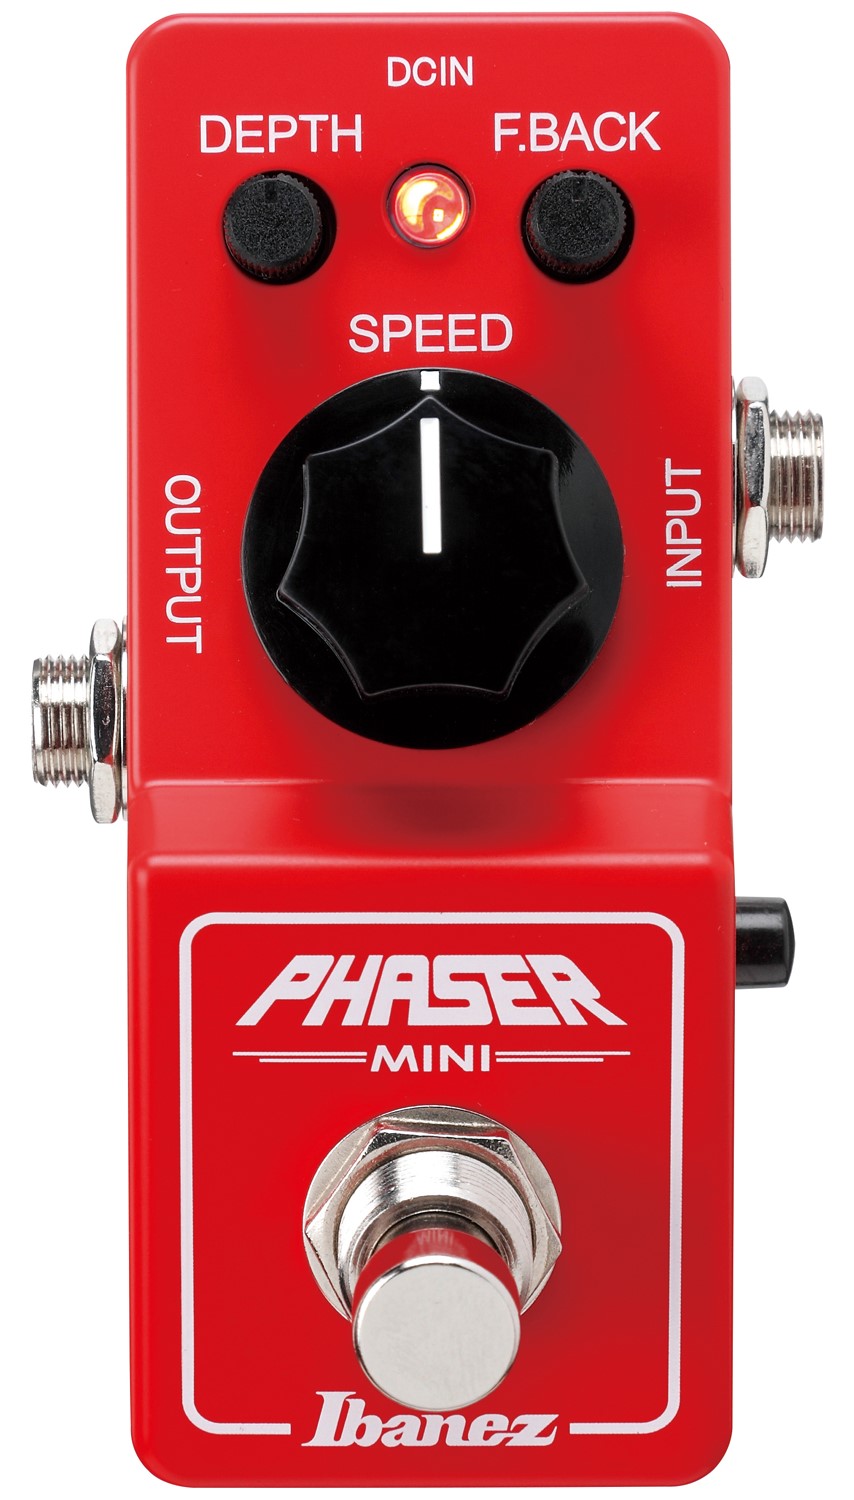 Køb Ibanez PHMINI Phaser Mini Guitar Pedal - Pris 895.00 kr.